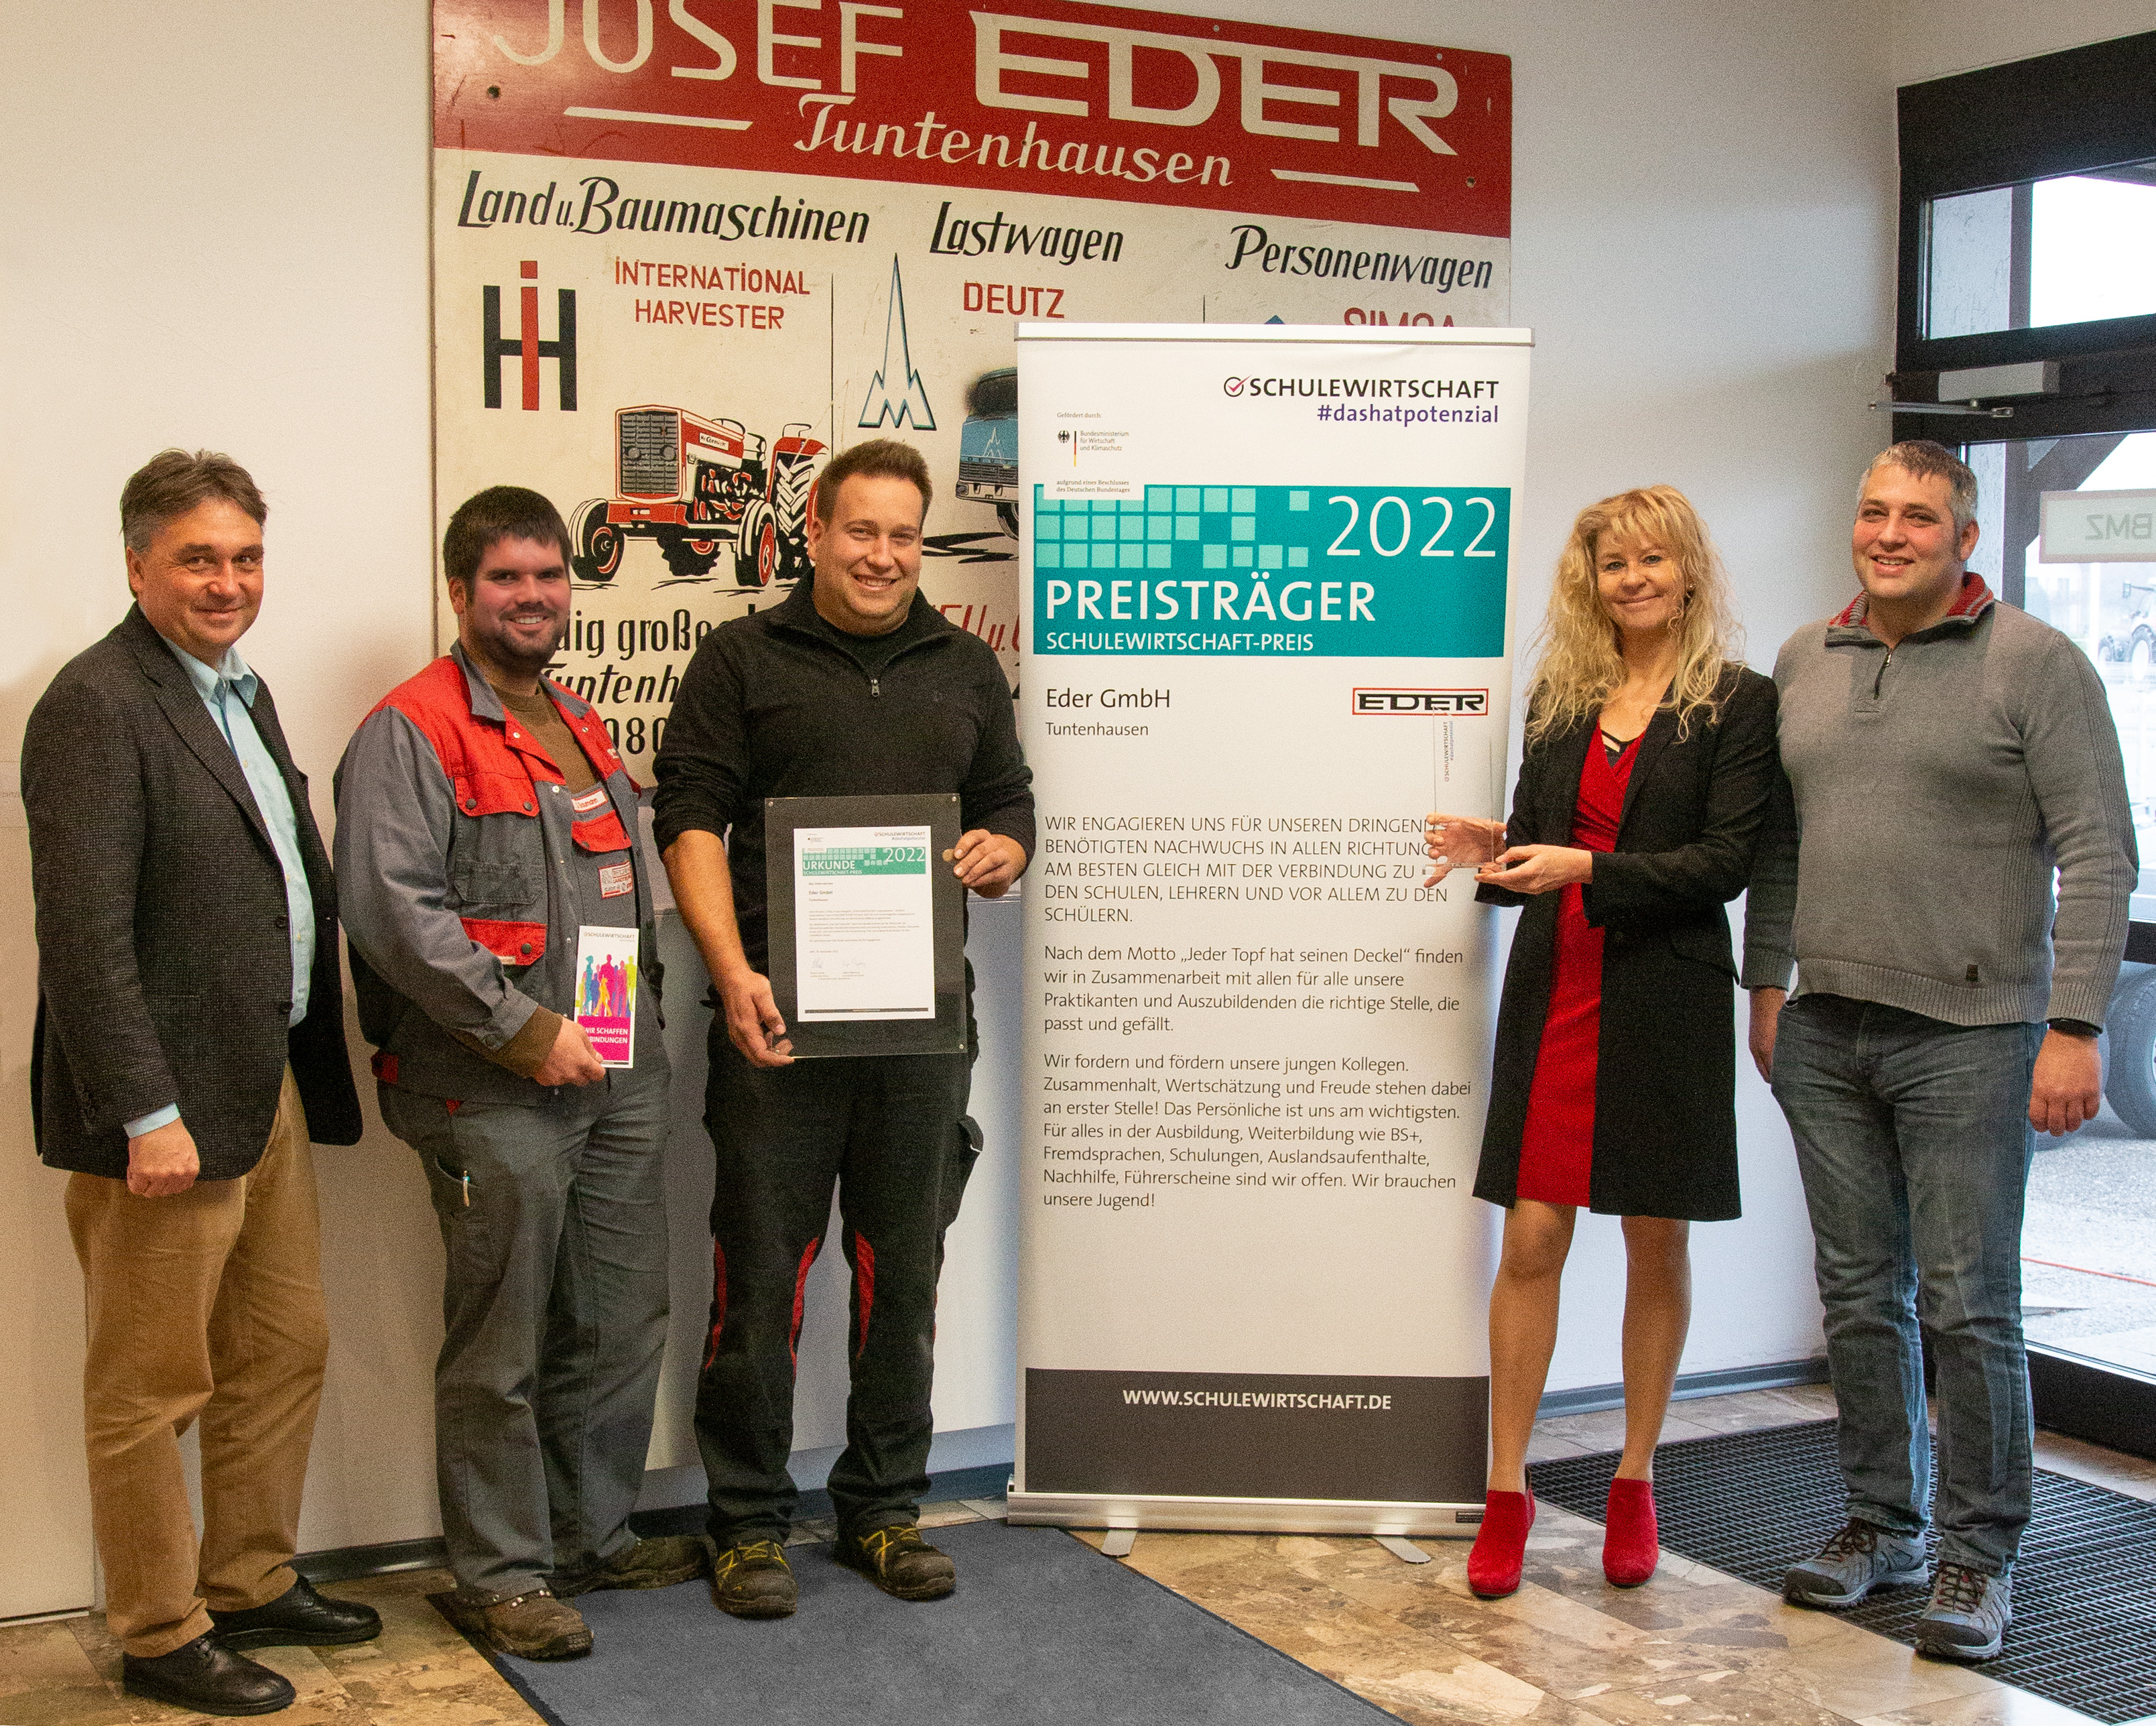 Eder GmbH erhält Bundespreis SCHULEWIRTSCHAFT 2022